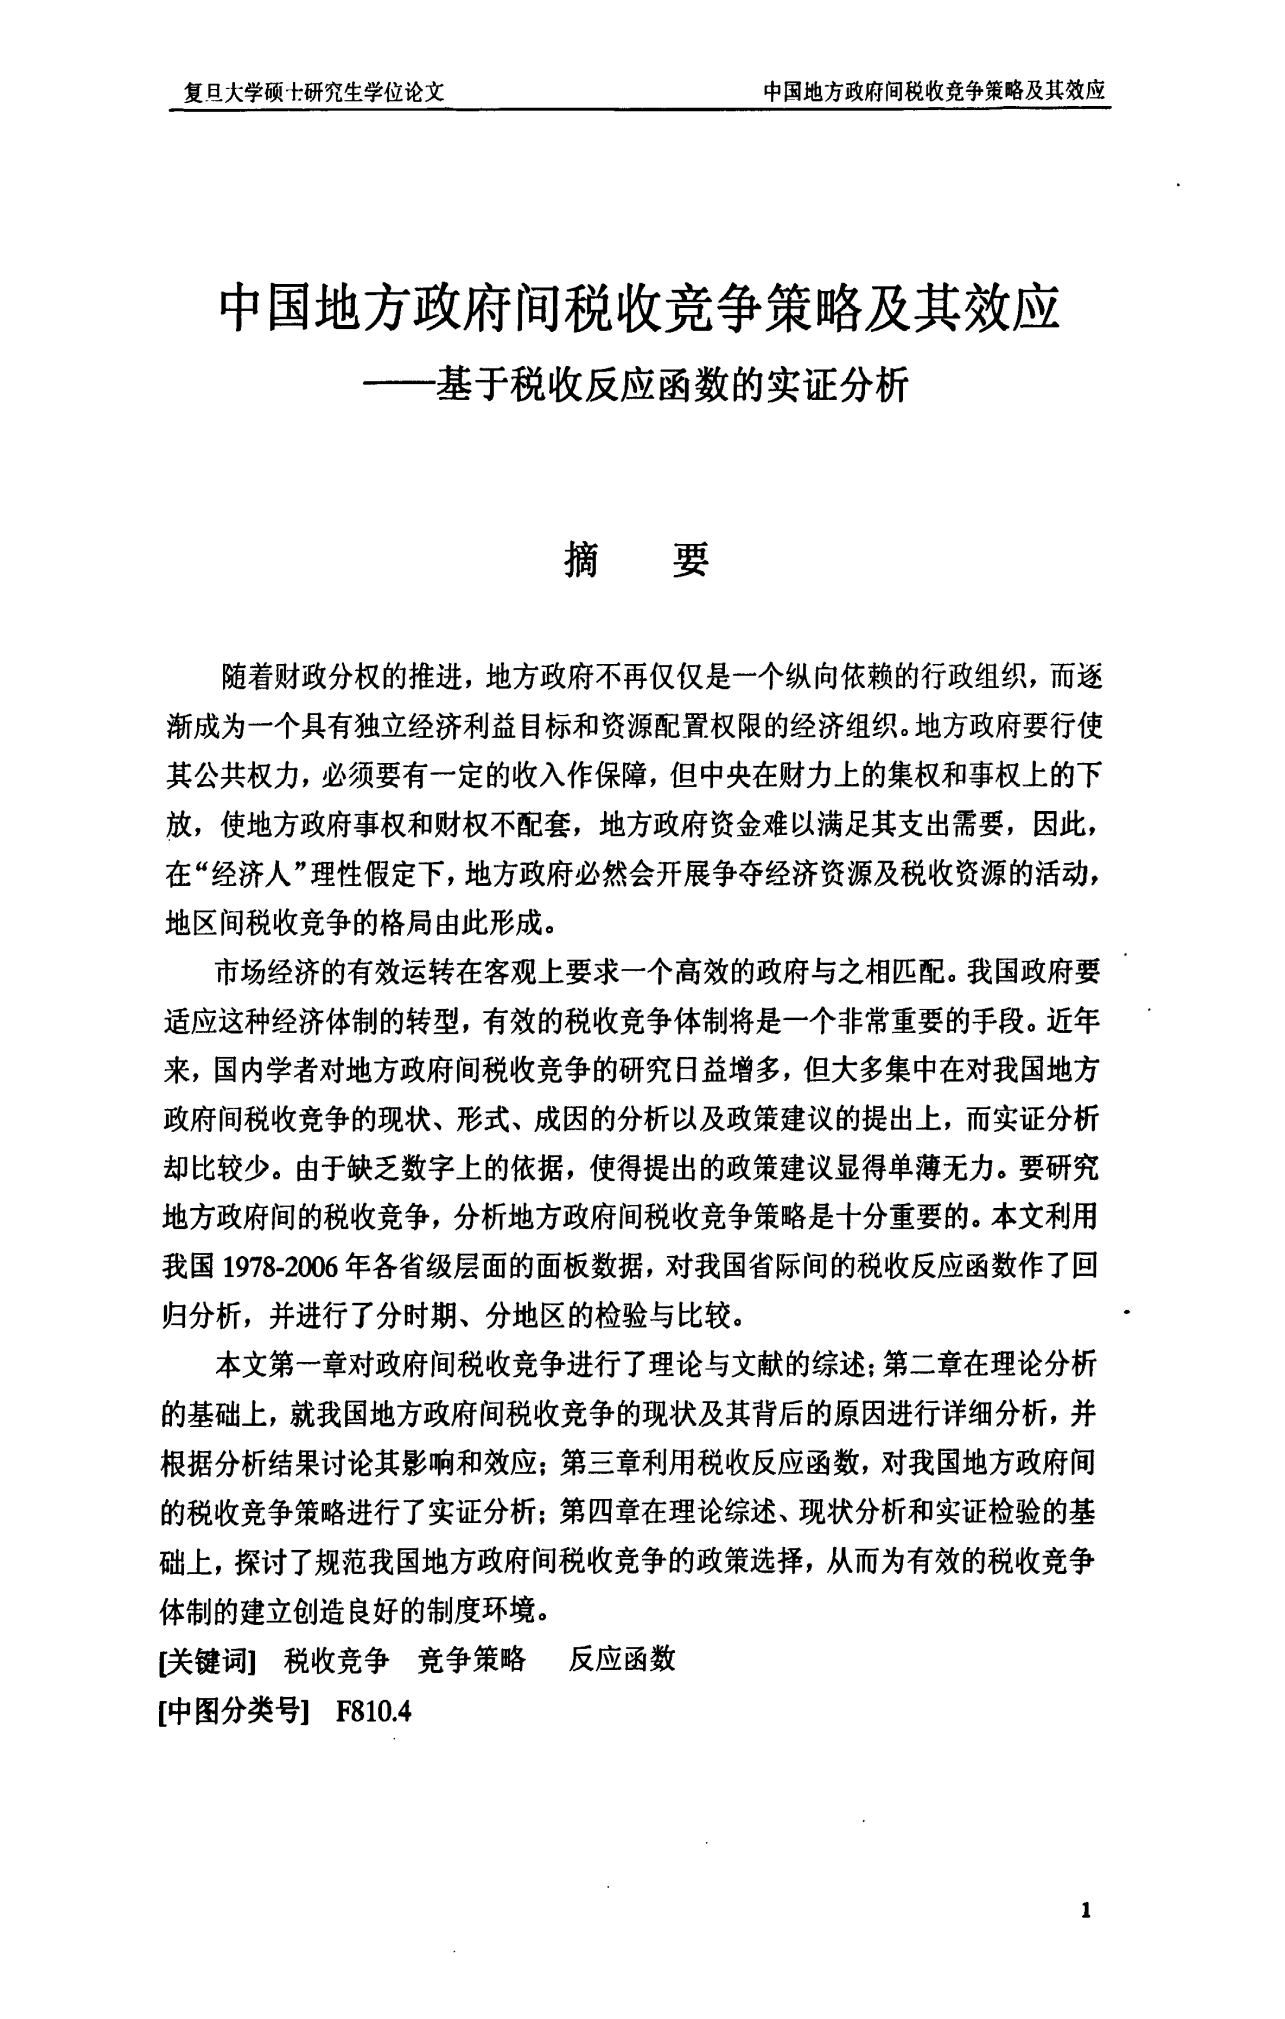 硕士论文--中国地方政府间税收竞争策略及其效应——基于税收反应函数的实证分析硕士论文